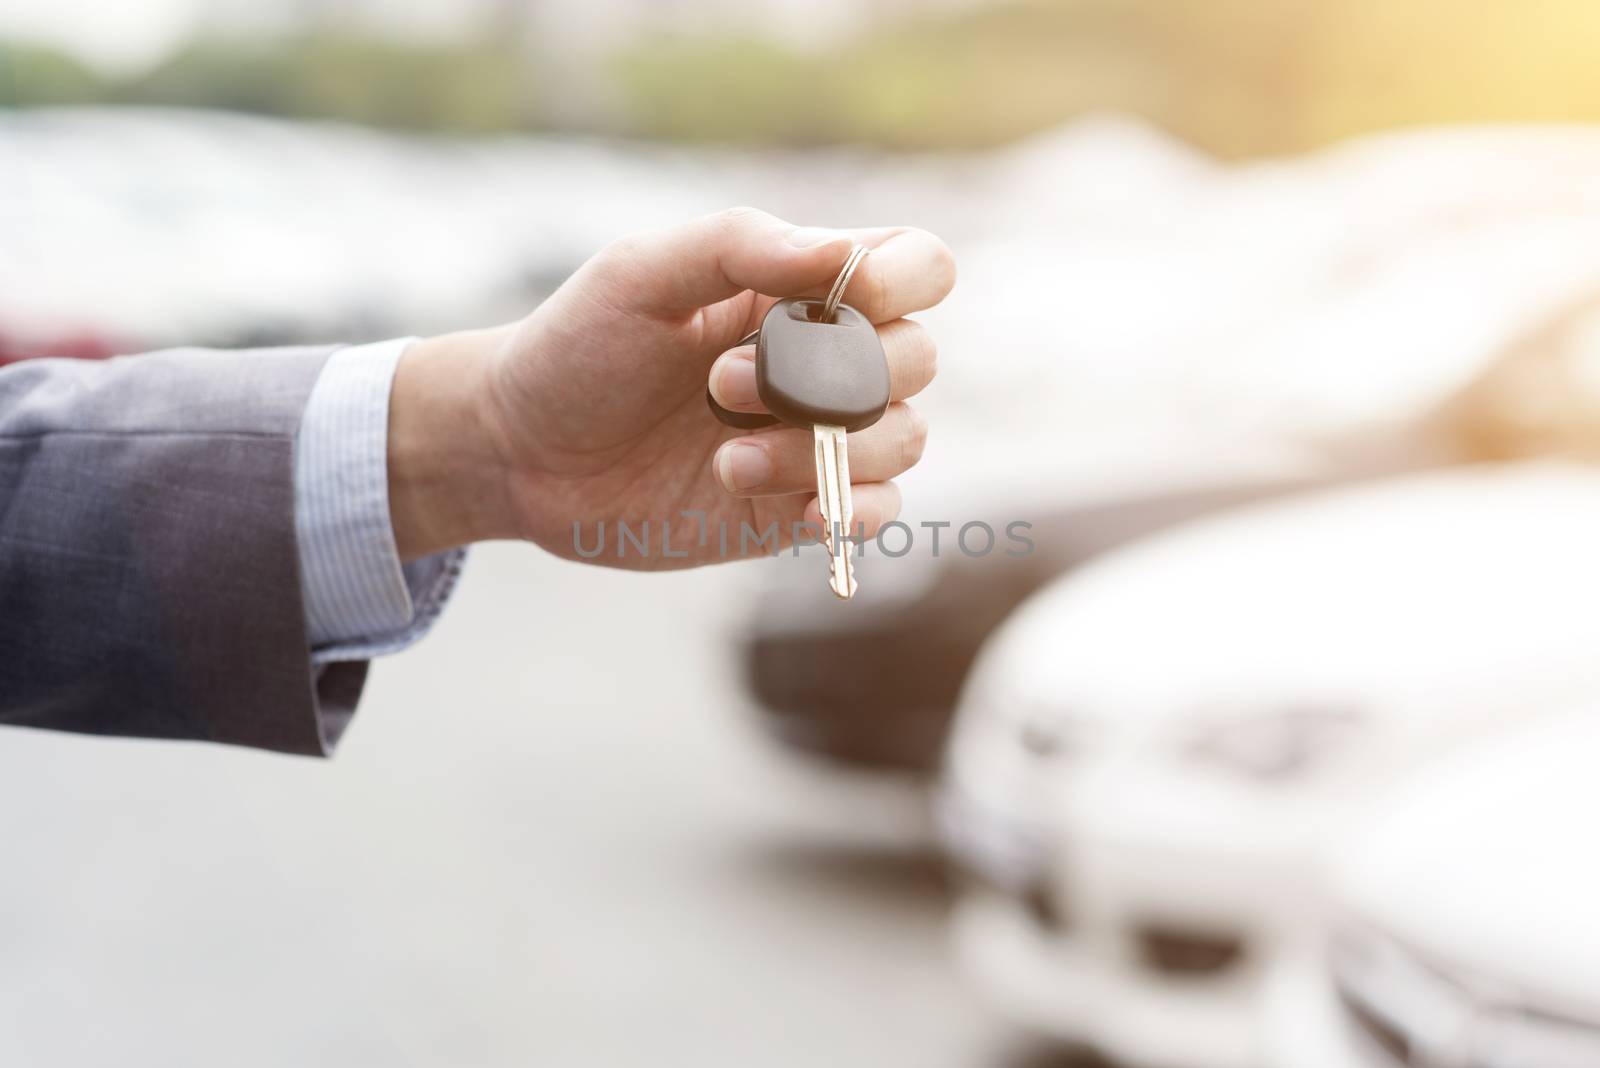 Hand with car key by szefei